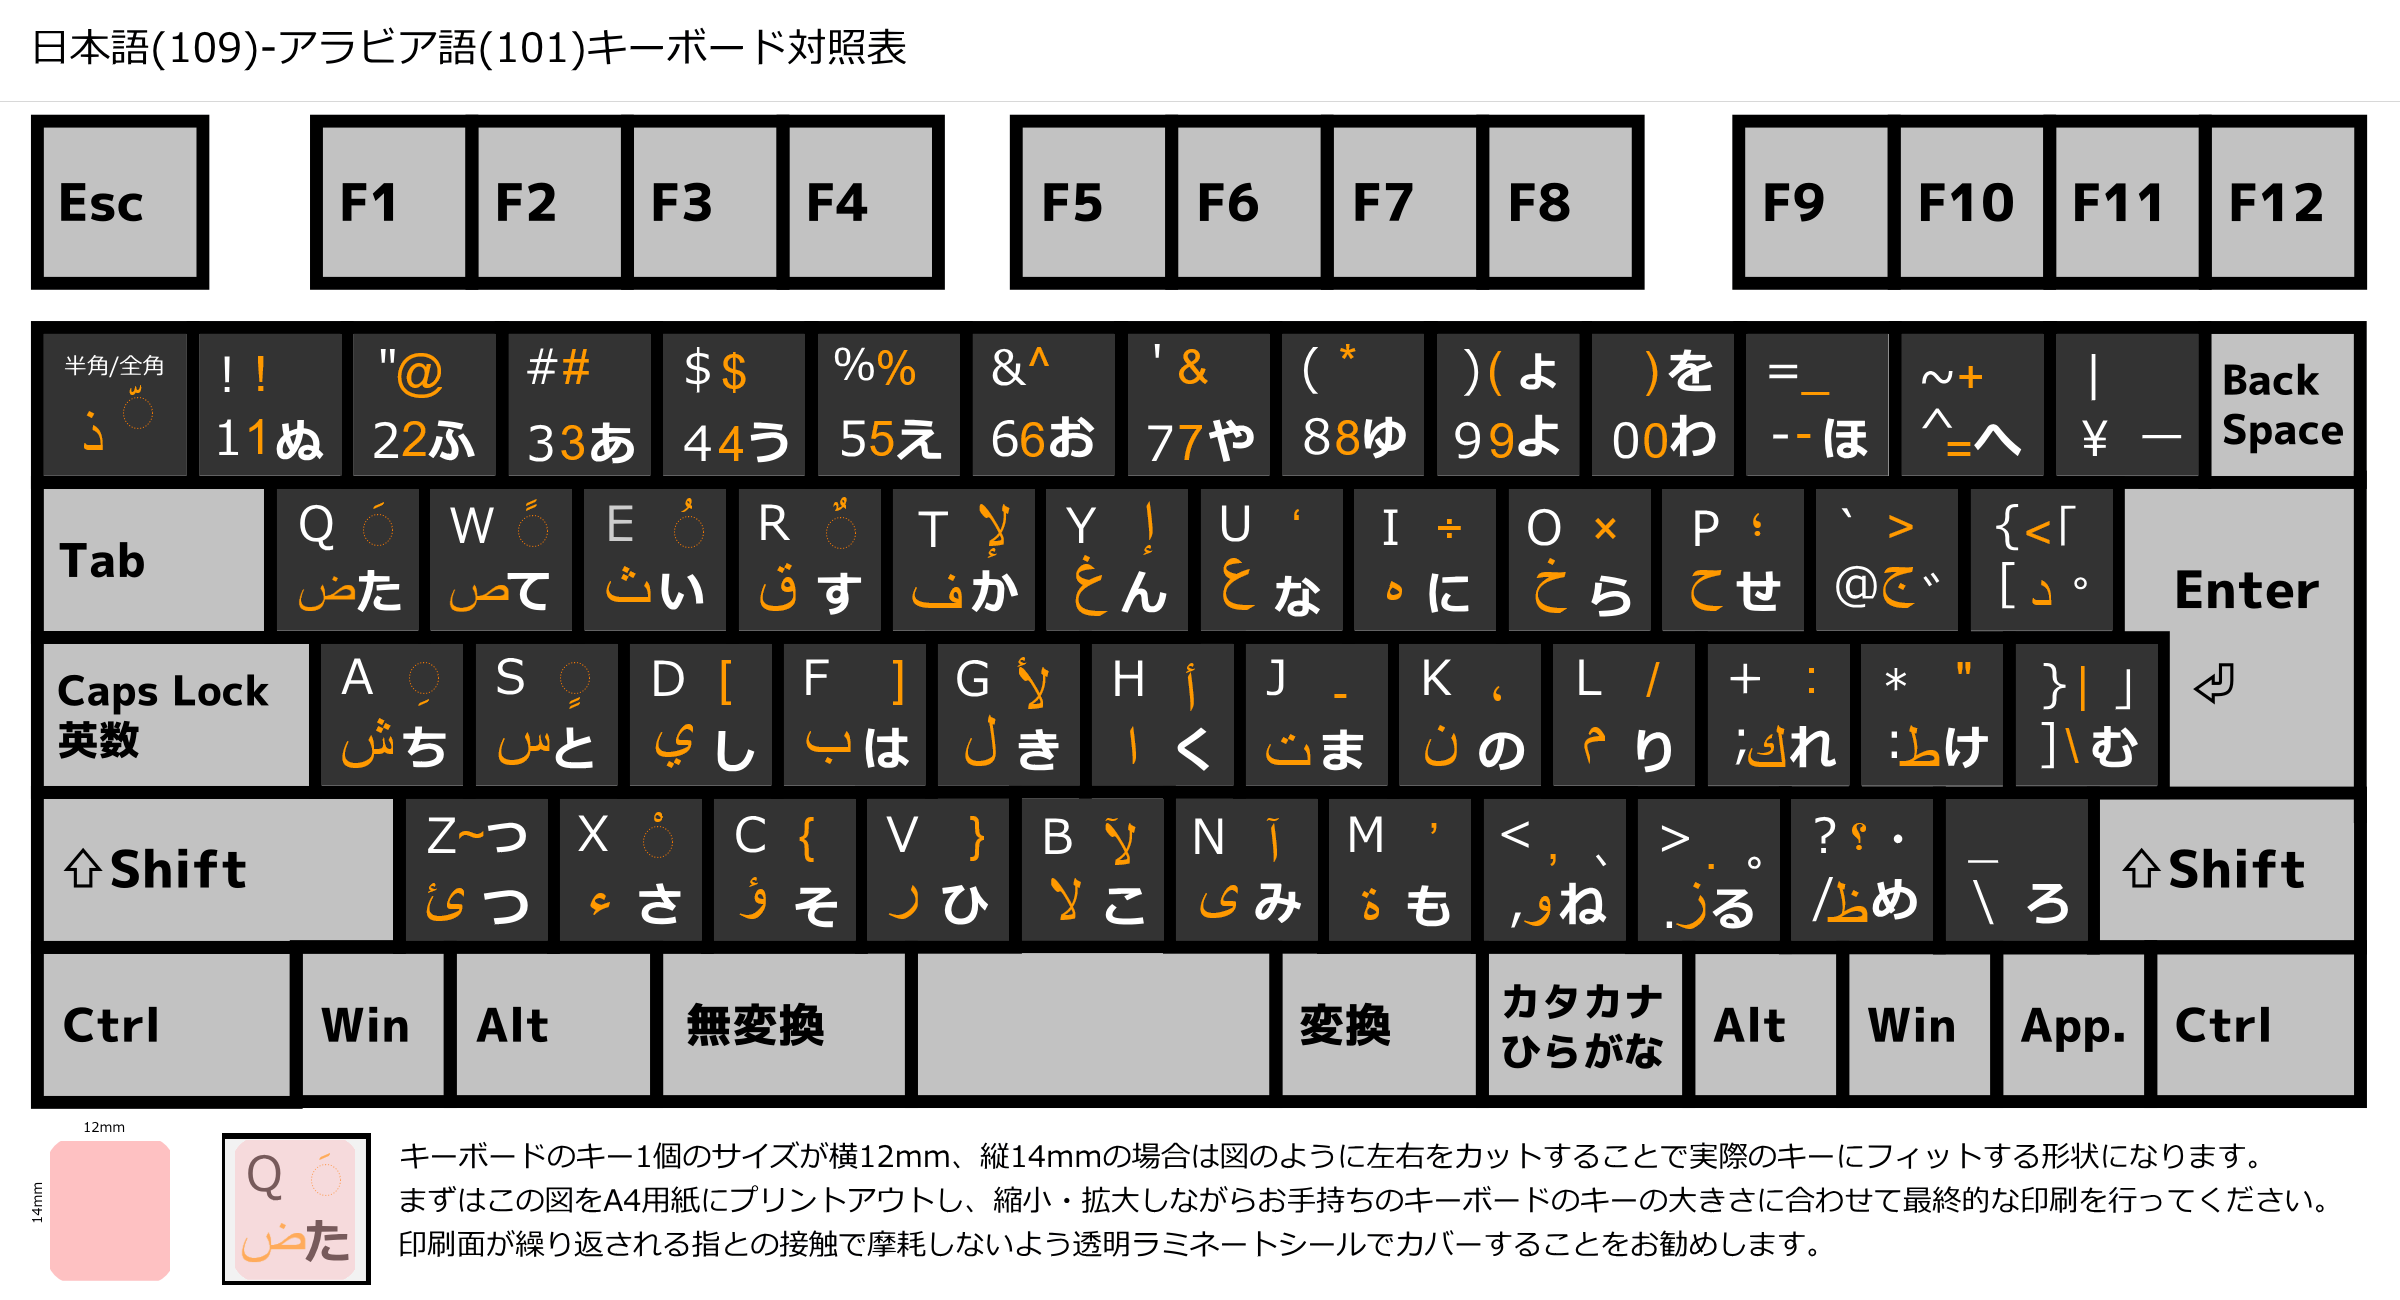 Windows 10でアラビア語 (5)日本語つきキーボード配列図、キーボードシール原稿 – アラビア語学習メモ